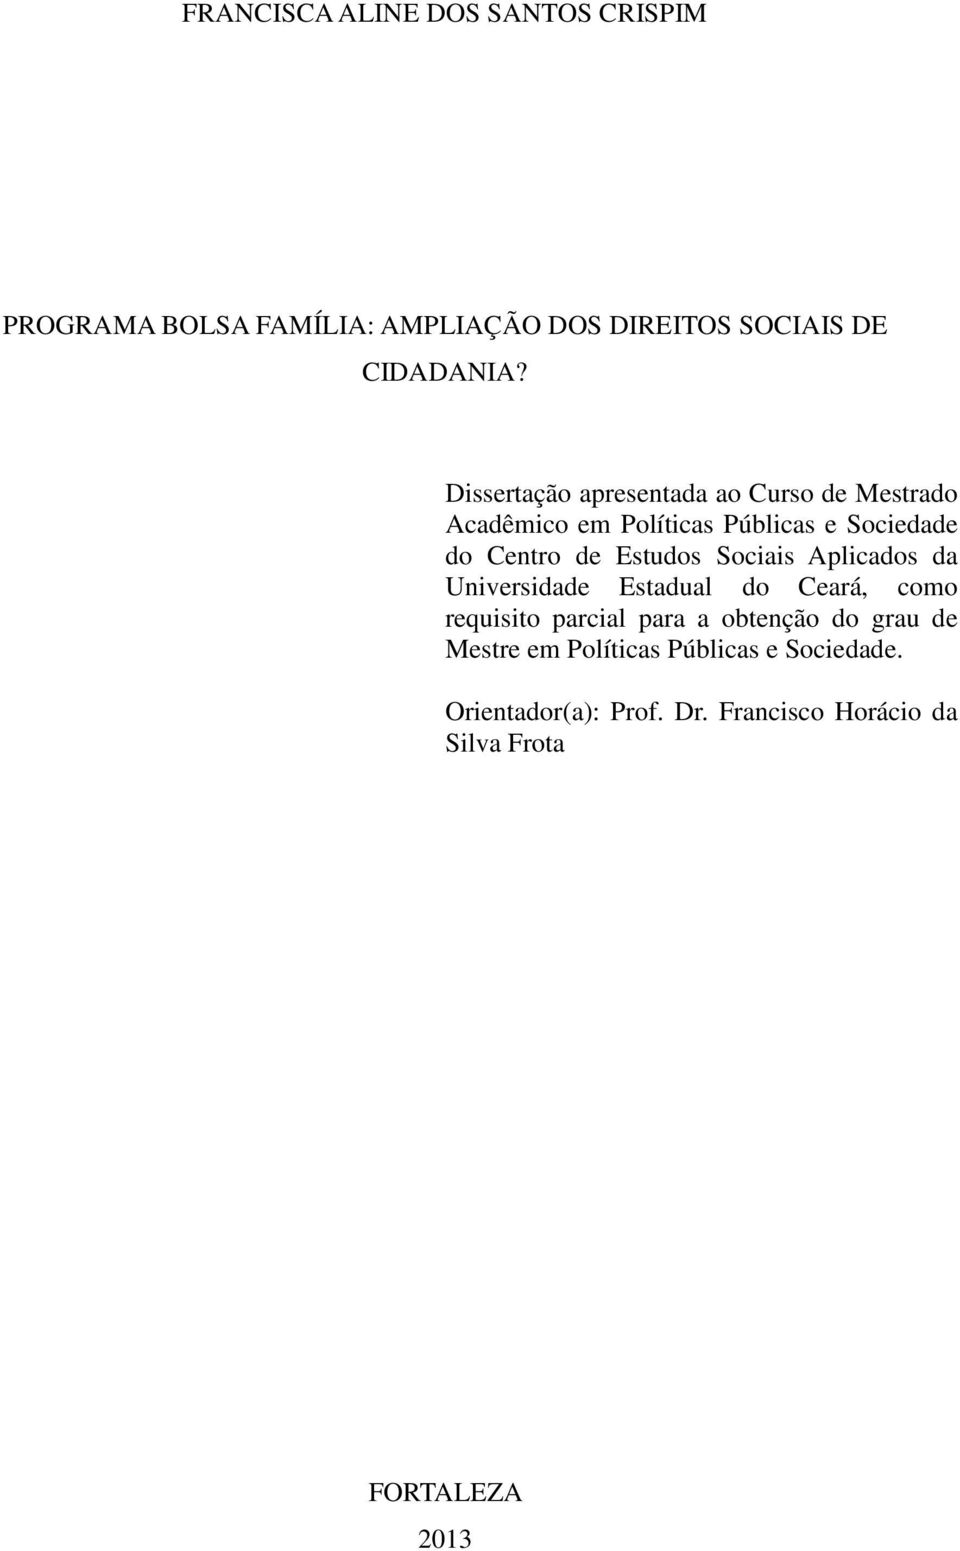 Estudos Sociais Aplicados da Universidade Estadual do Ceará, como requisito parcial para a obtenção do grau